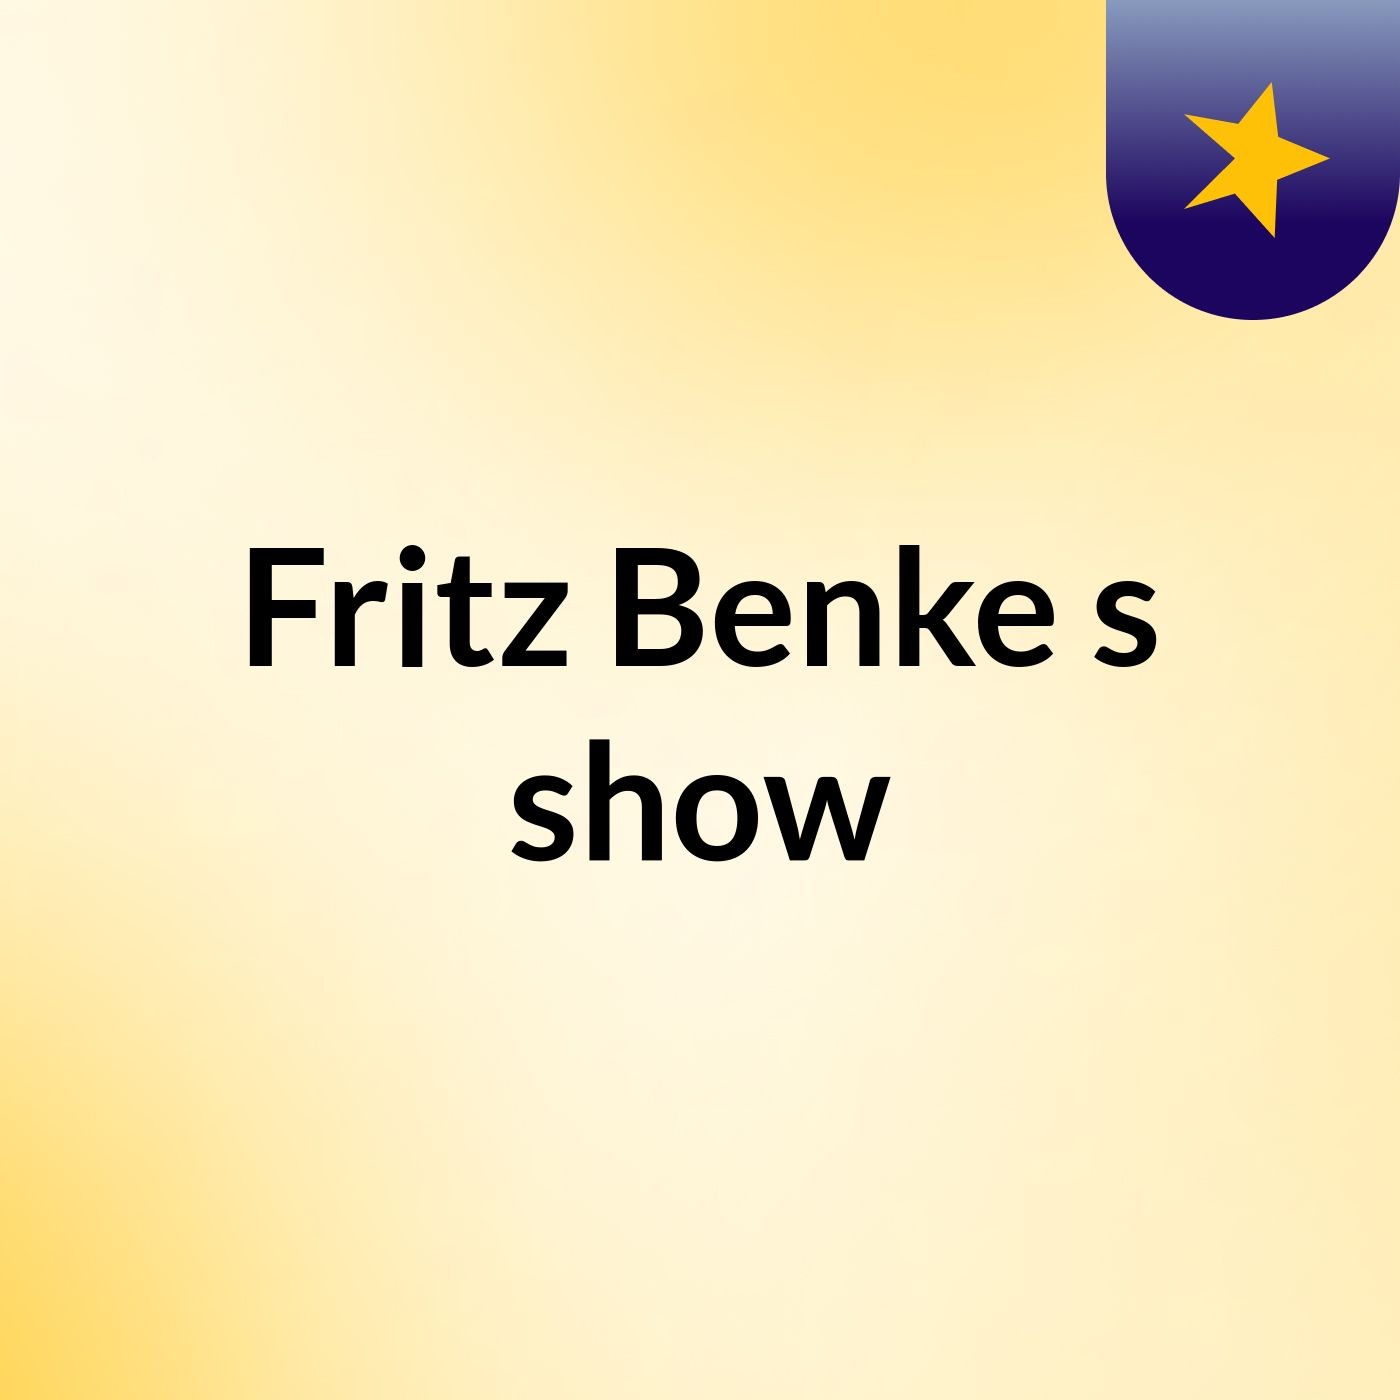 Fritz Benke's show